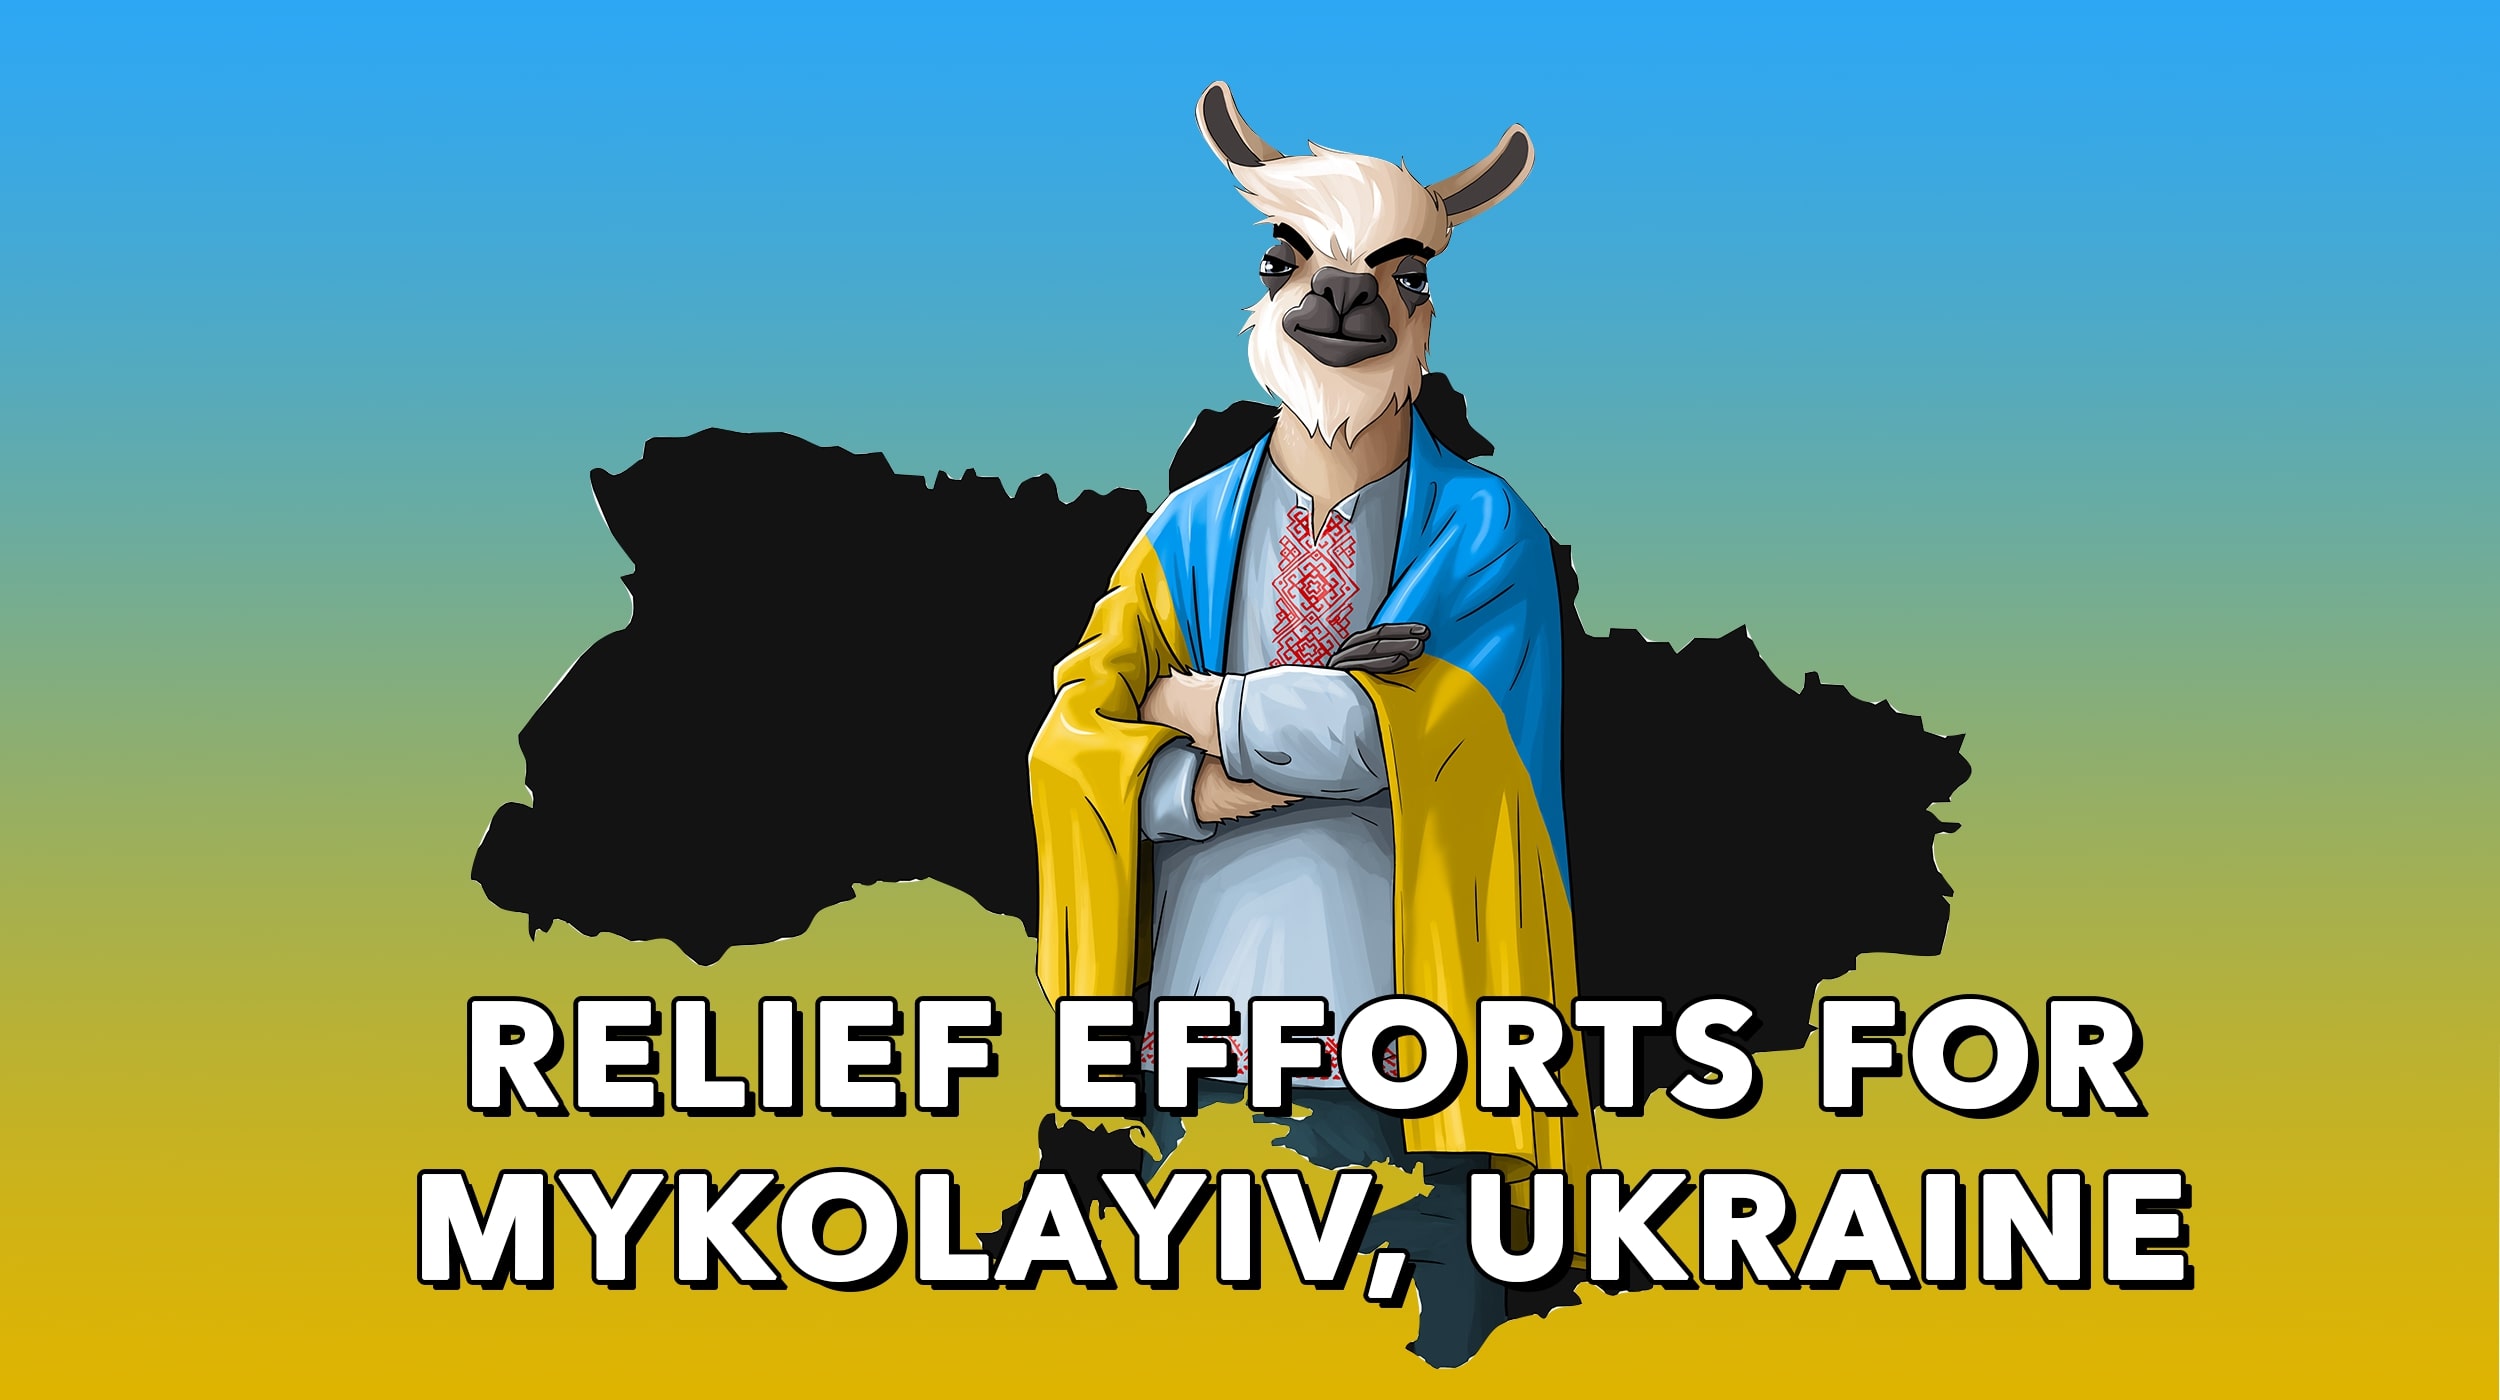 Ukraine Relief Efforts for Mykolayiv, Ukraine